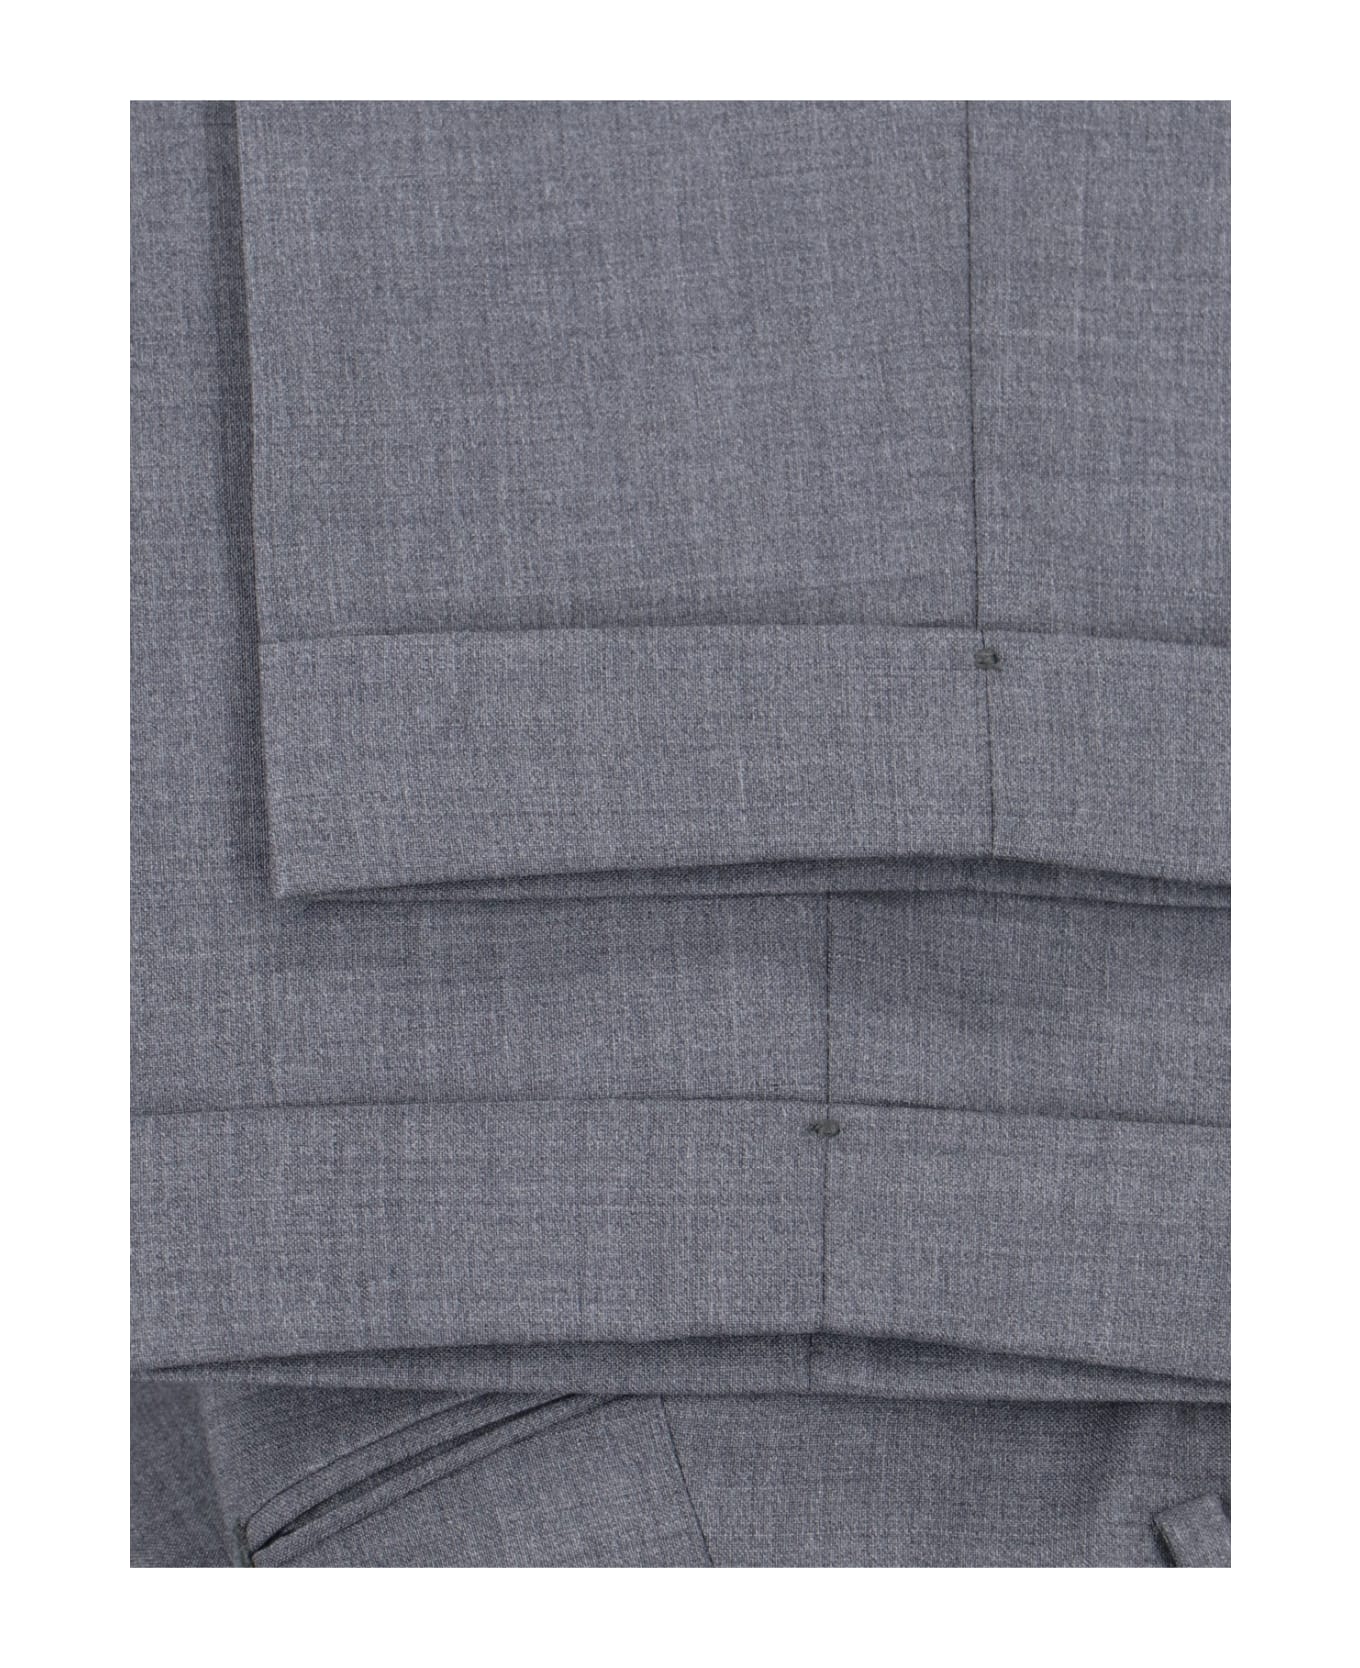 Briglia 1949 Tailored Trousers - Gray